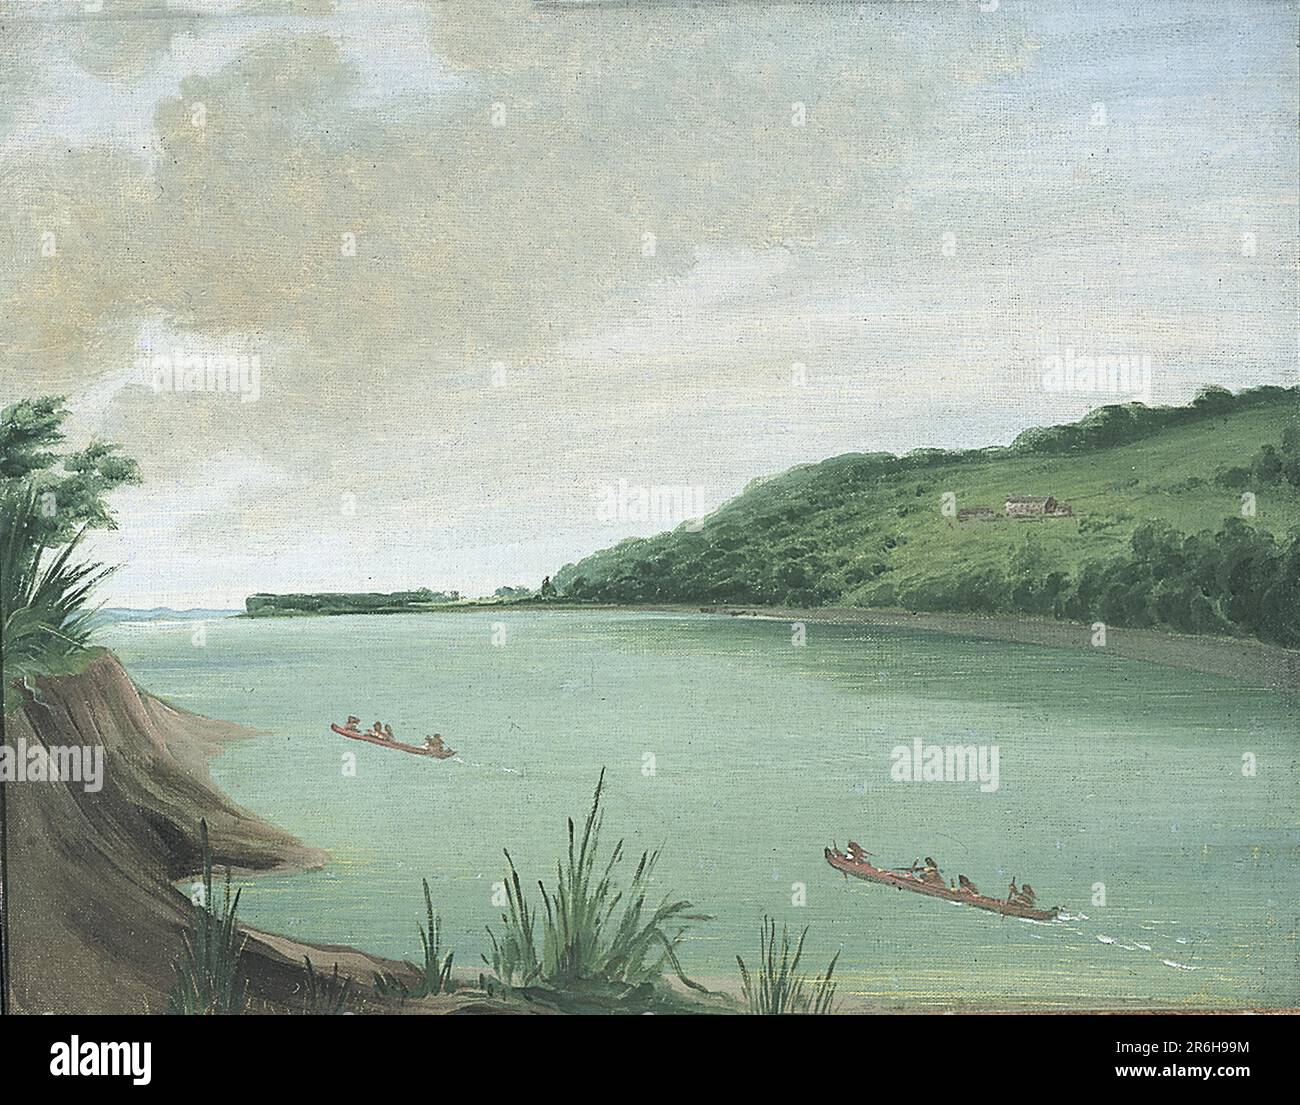 Belle Vue, Agenzia indiana di Major Dougherty, a 870 km circa da St. Louis. olio su tela. Data: 1832. Museo: Smithsonian American Art Museum. Foto Stock